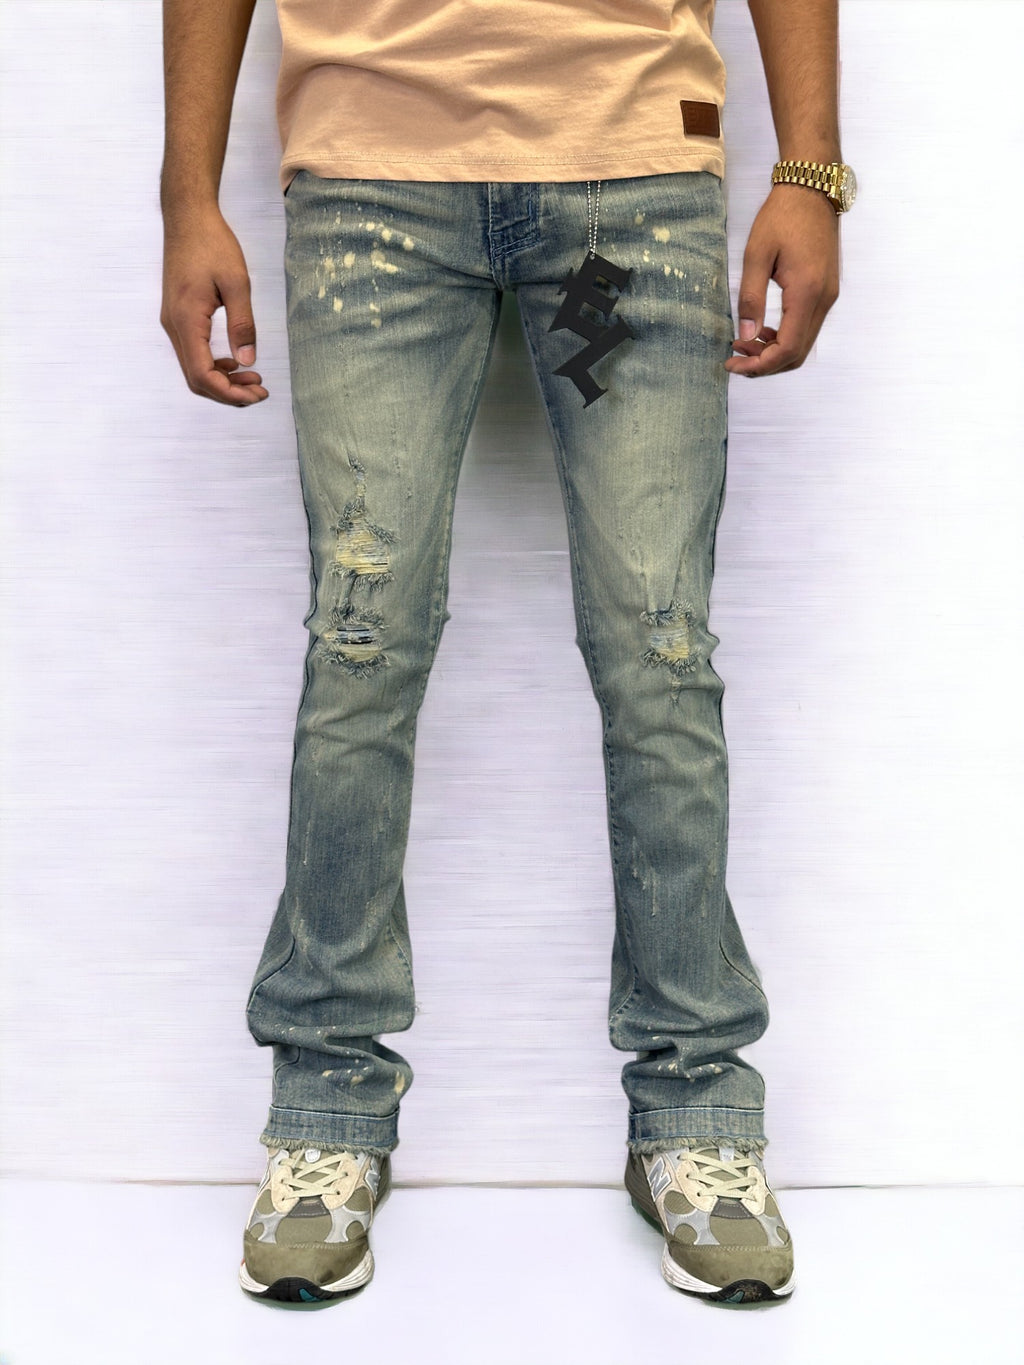 Sea Splash Premium Men's Stack Jeans